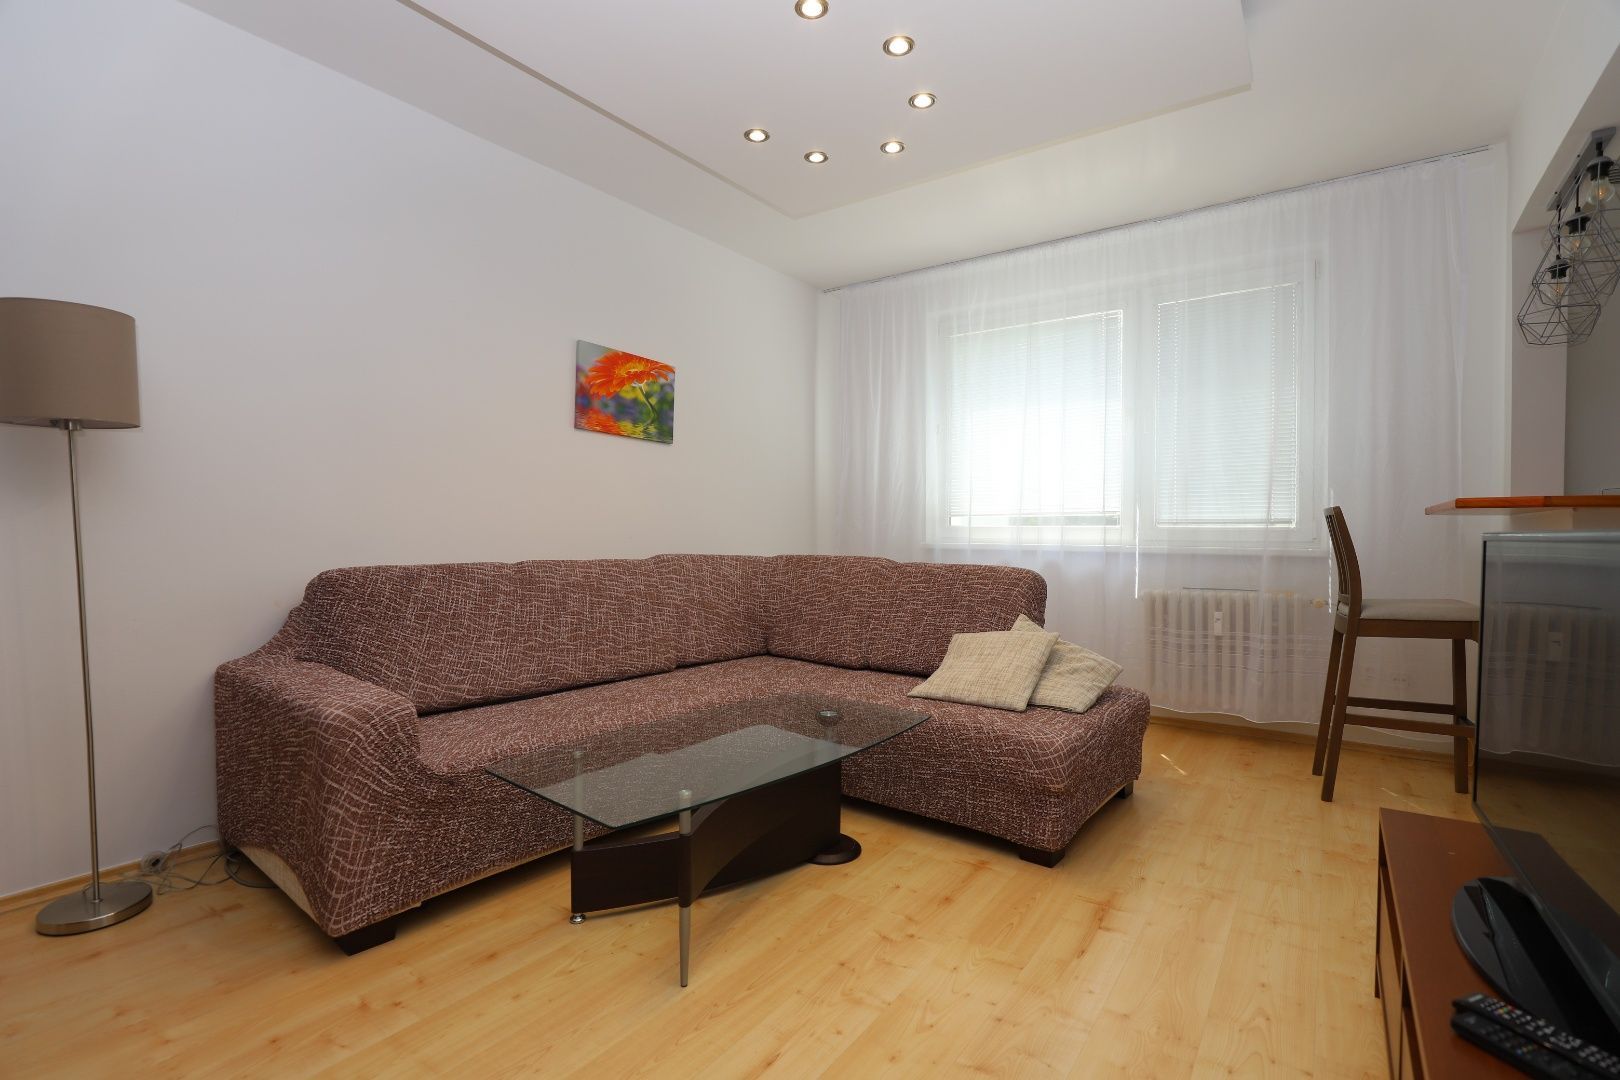 DAHLEH - Na prenájom 2 - izbový byt vo výbornej lokalite v Petržalke